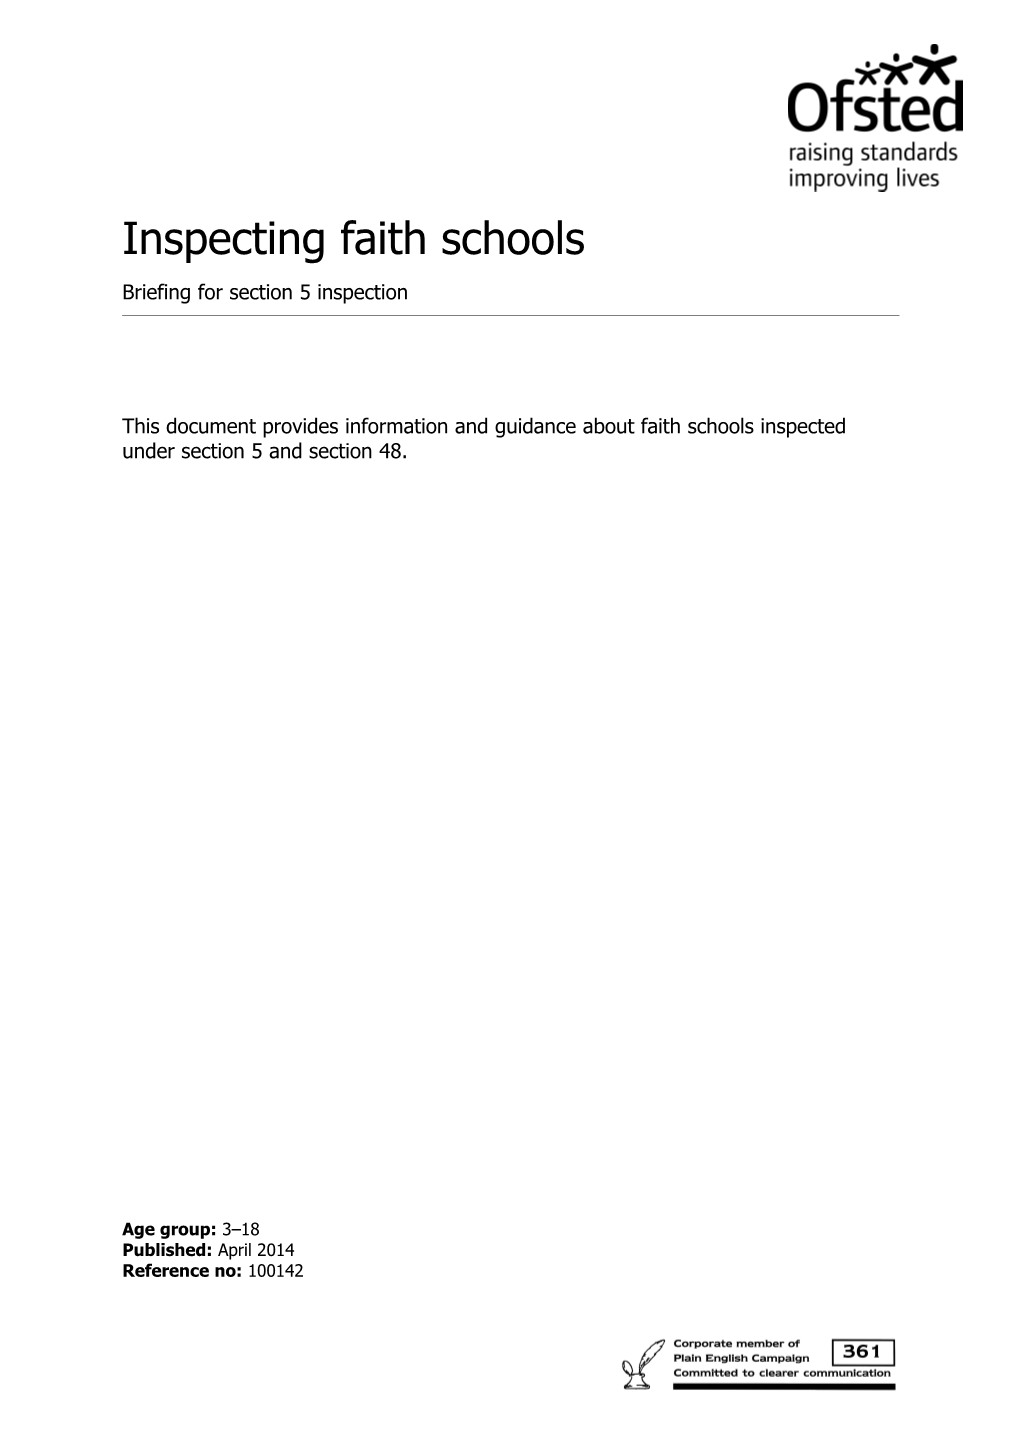 Inspecting Faith Schools